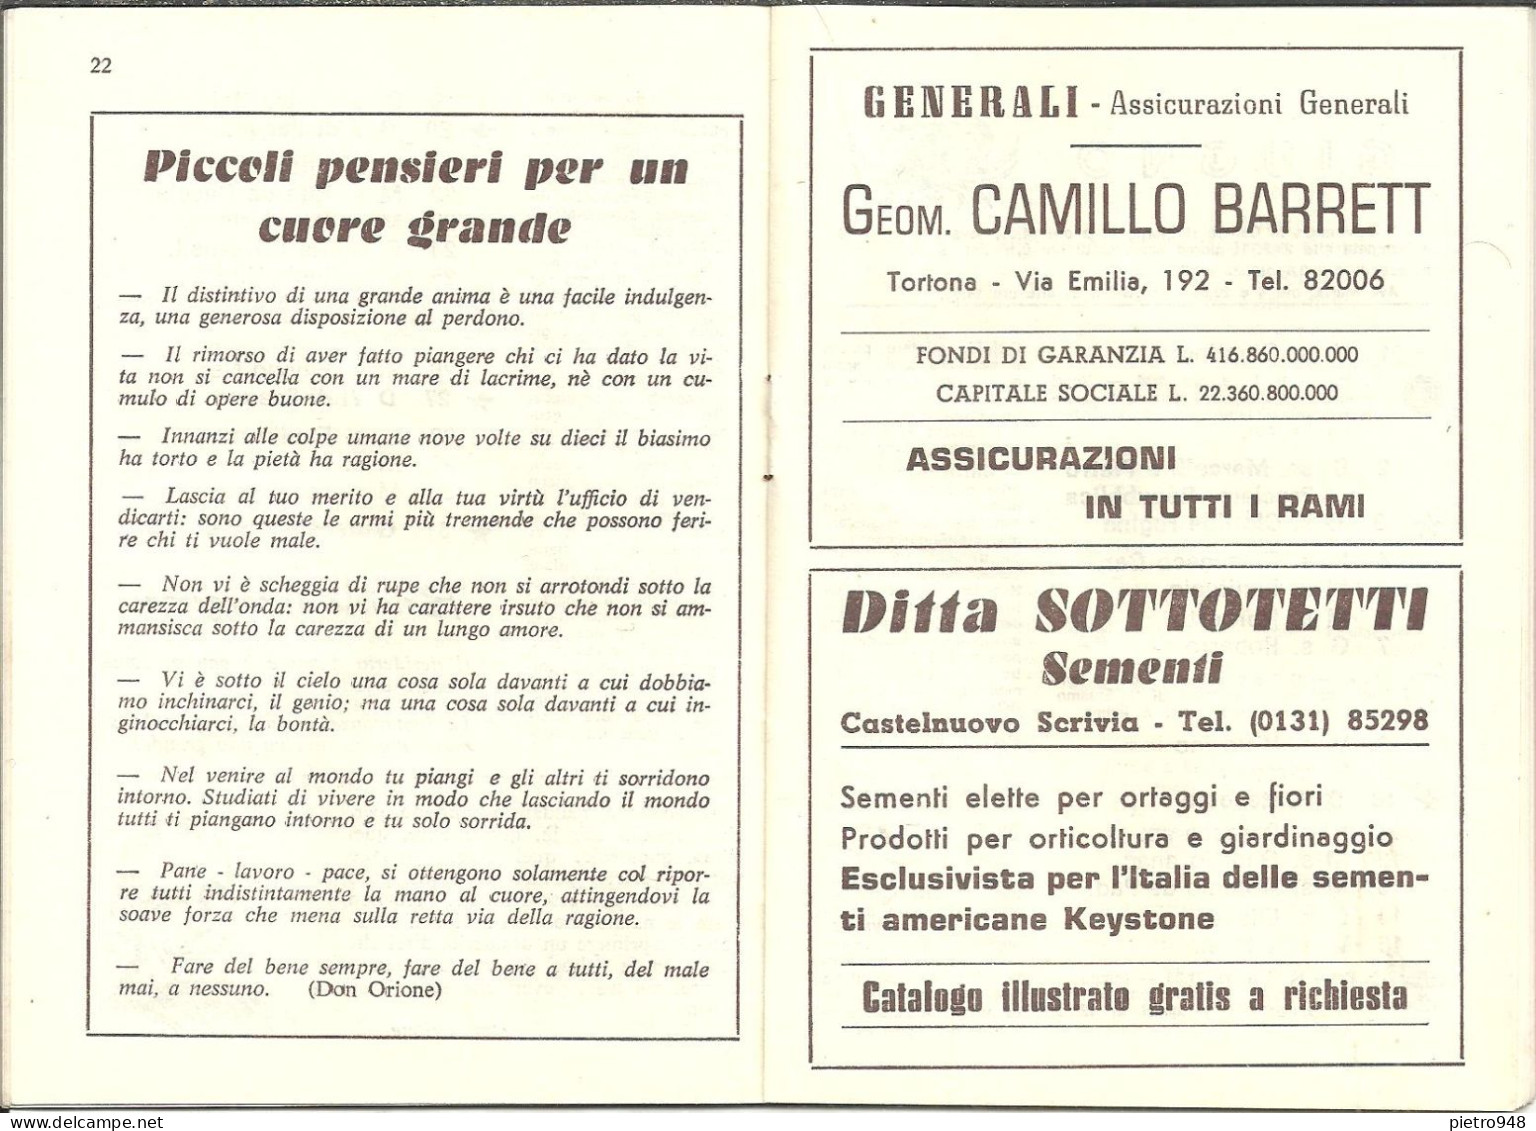 Libro (Libretto) Religioso "Il Romito Dell'Appennino 1973", Ed. Scuola Tipografica S. Giuseppe-Opera Don Orione Tortona - Godsdienst / Spiritualisme